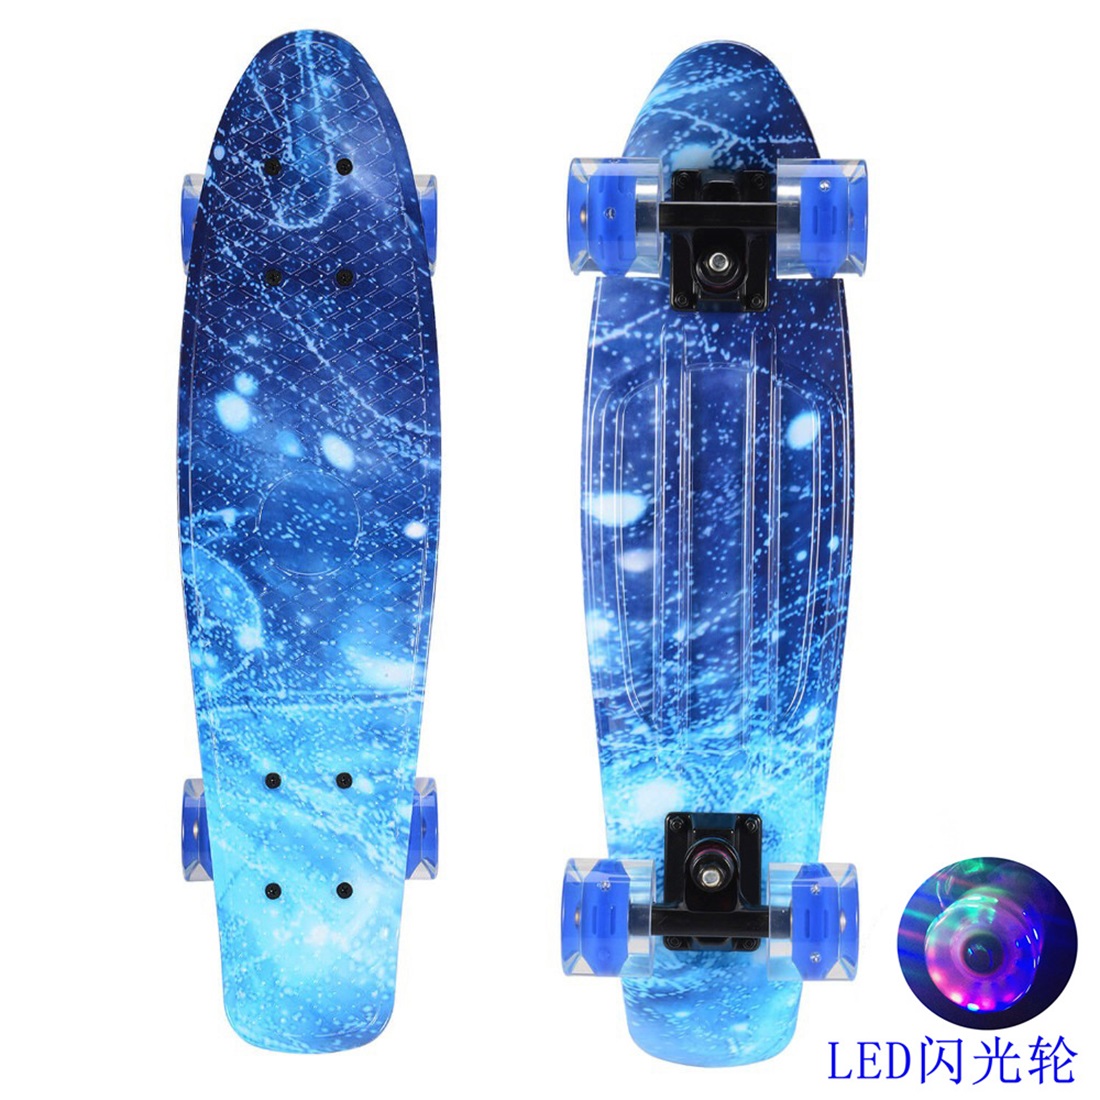 Mini Cruiser 22" LED Skateboard Komplett Board Pennyboard Funboard Deckboard TOP 